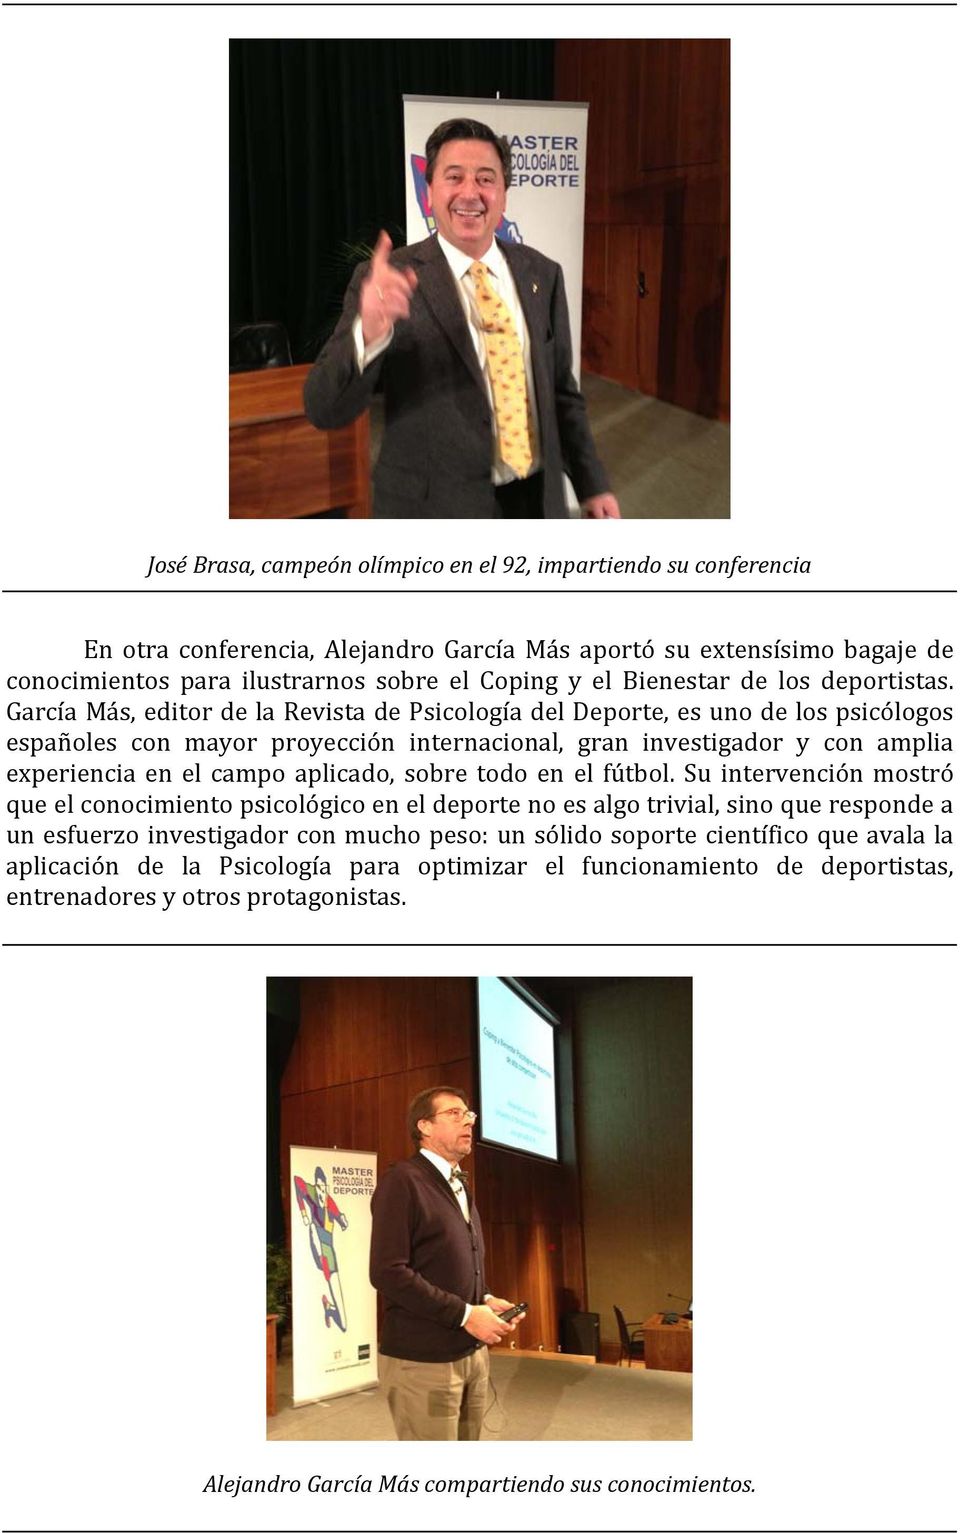 García Más, editor de la Revista de Psicología del Deporte, es uno de los psicólogos españoles con mayor proyección internacional, gran investigador y con amplia experiencia en el campo aplicado,